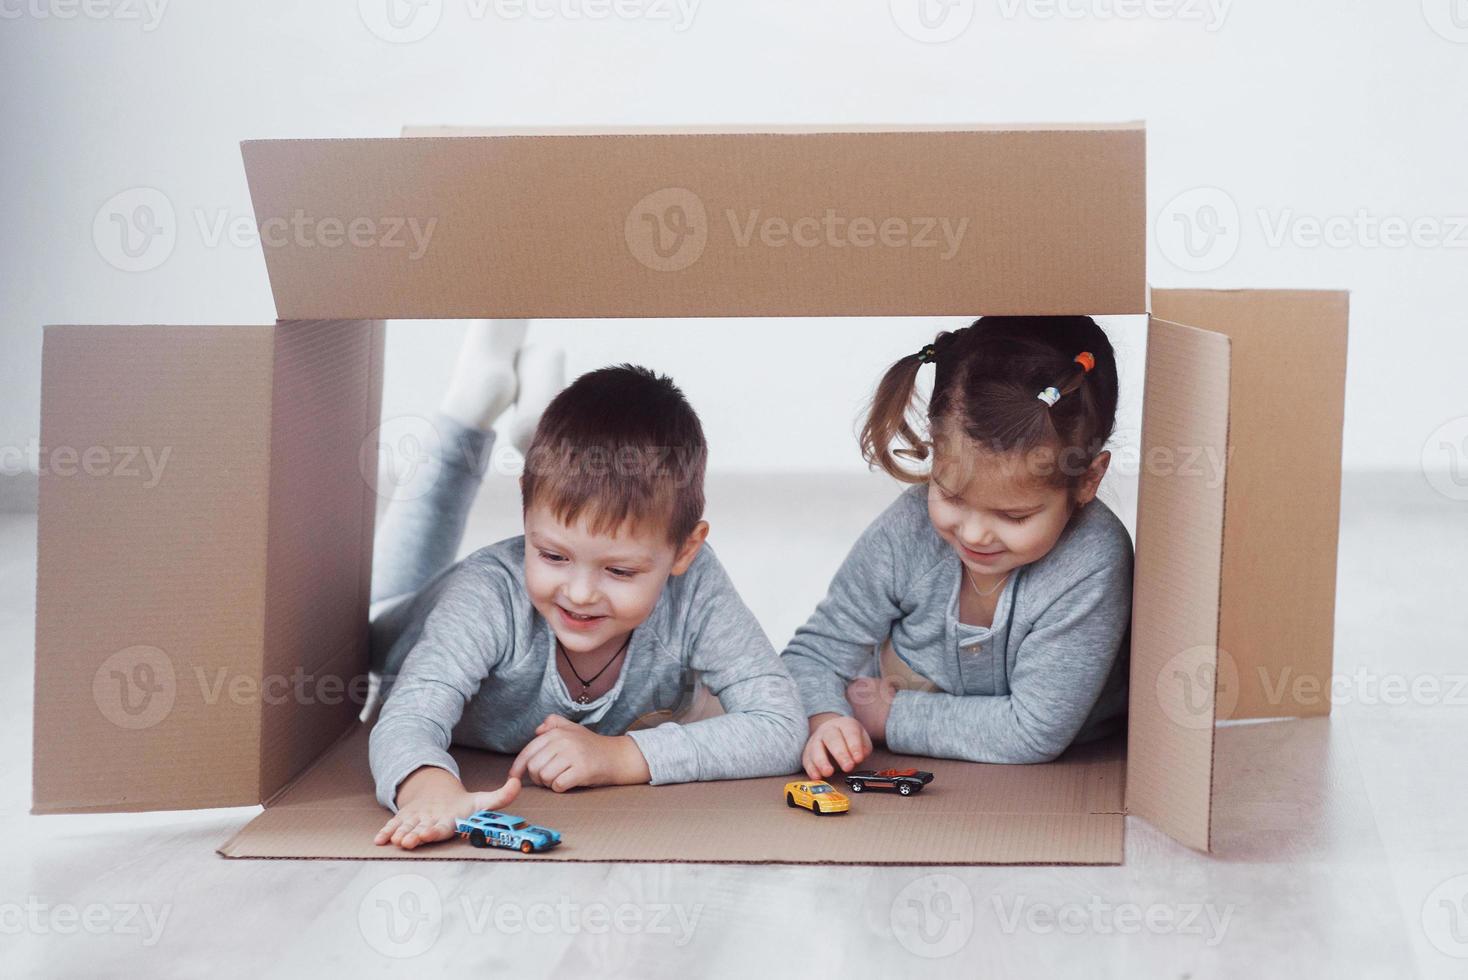 deux un petit garçon et une fille jouant de petites voitures dans des boîtes en carton. photo conceptuelle. les enfants s'amusent. photo conceptuelle. les enfants s'amusent